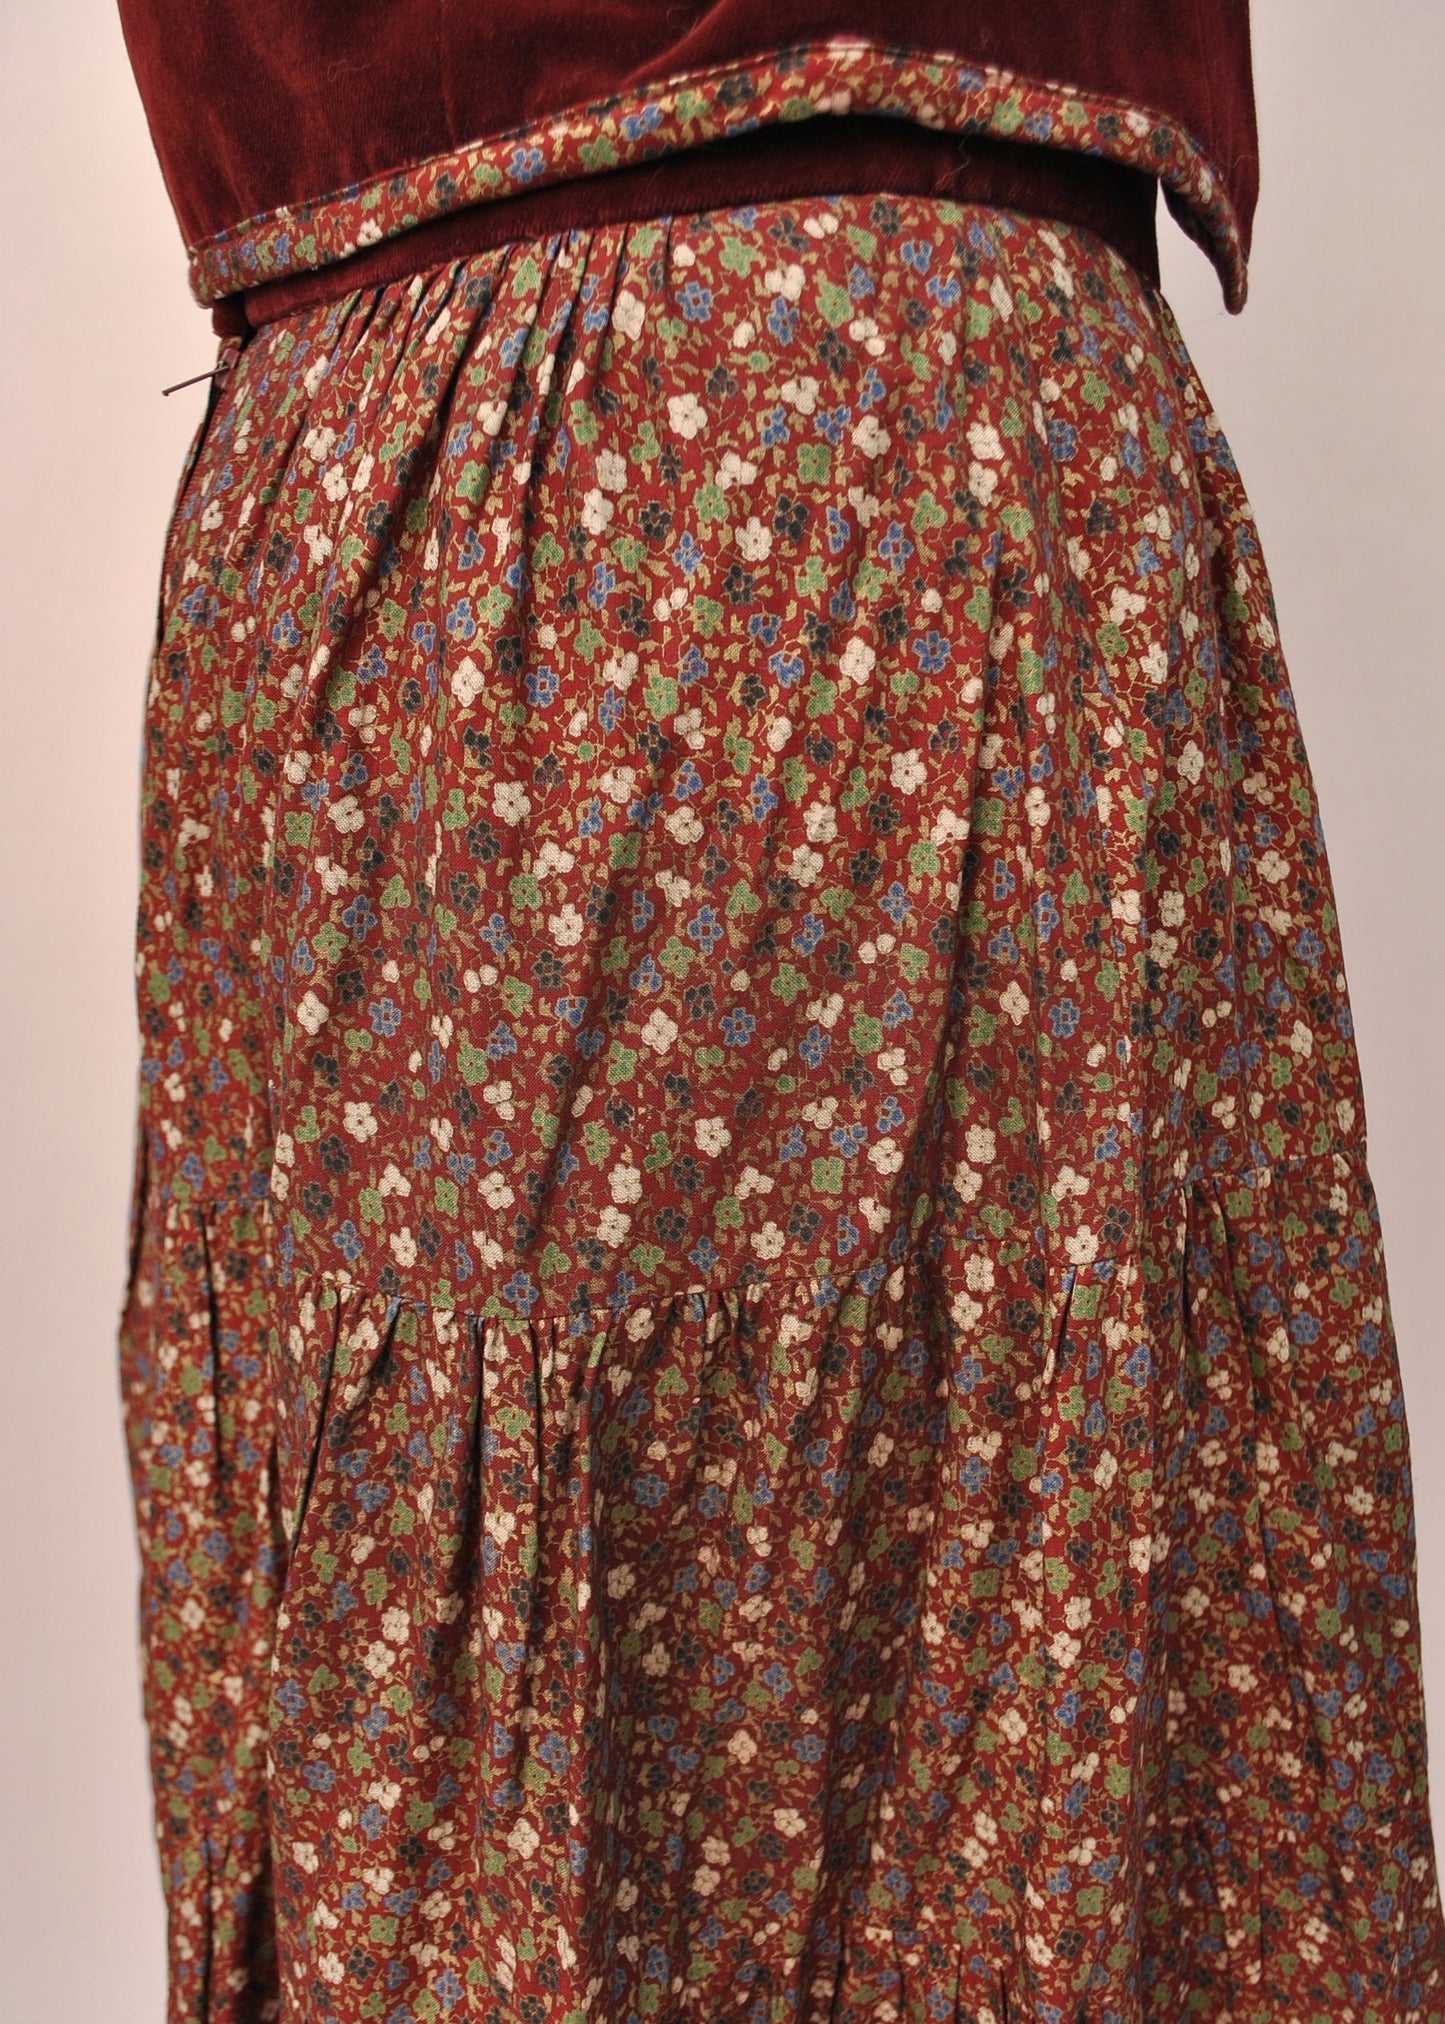 Vintage 70s Burgundy Ditsy Floral Skirt and Vest Set • Marion Donaldson